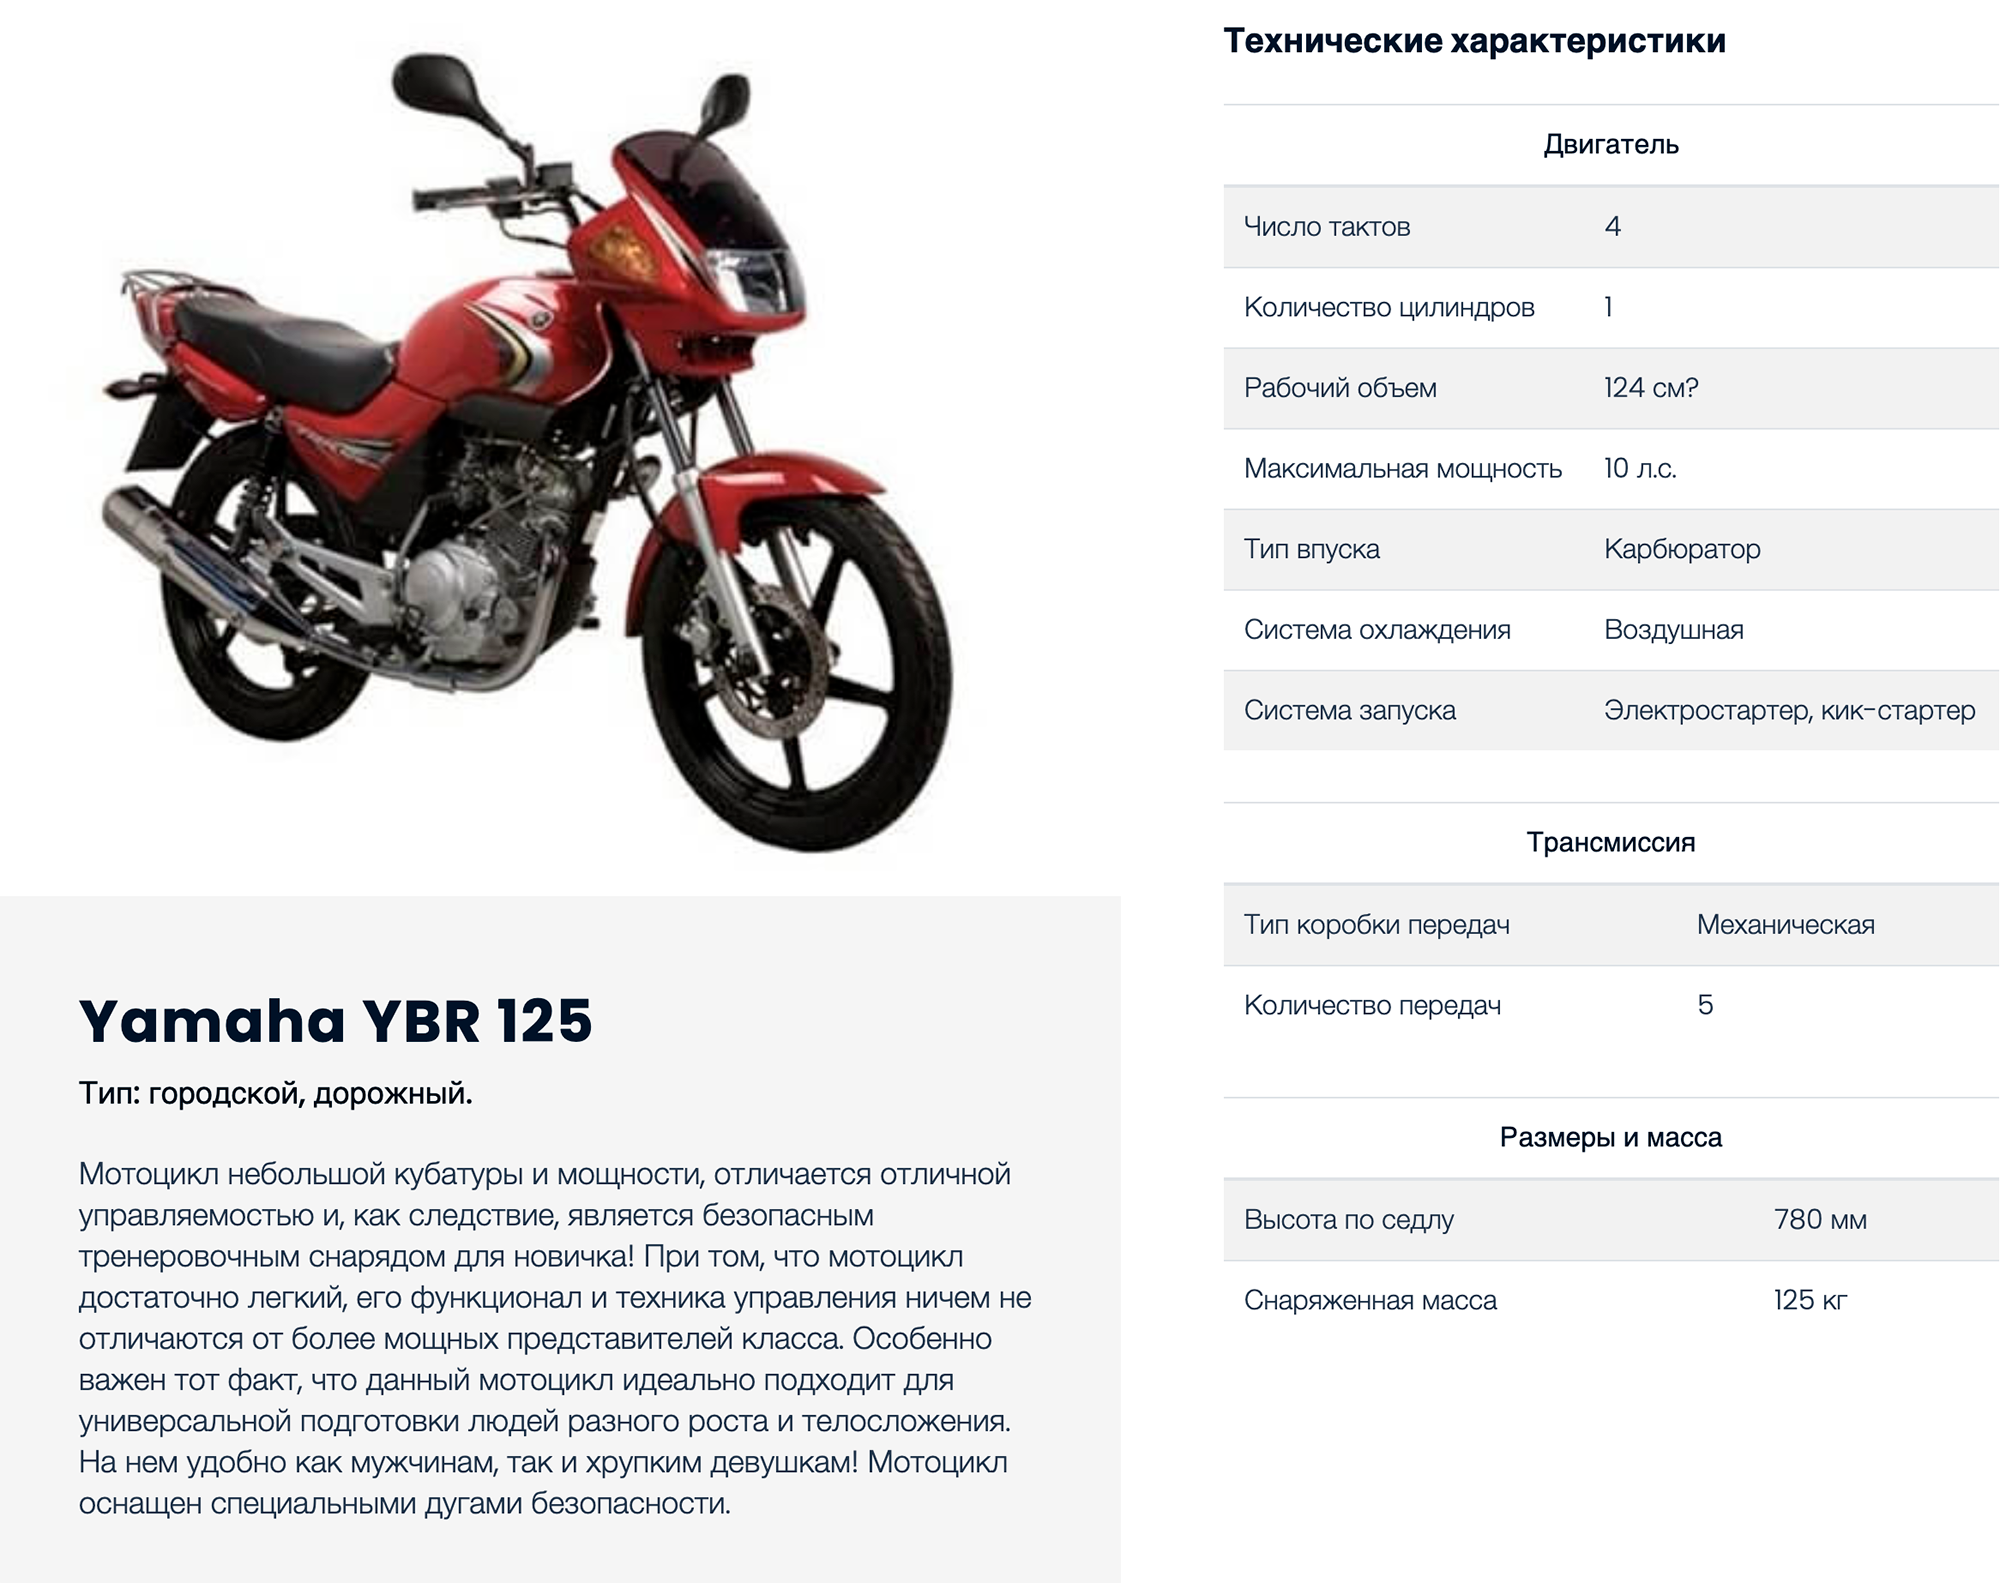 Подробные характеристики и описание. Yamaha YBR 125 ПТС. Габариты мотоцикла Ямаха юбр 125. Вес Ямаха юбр 125. Ямаха YBR 125 высота по седлу.